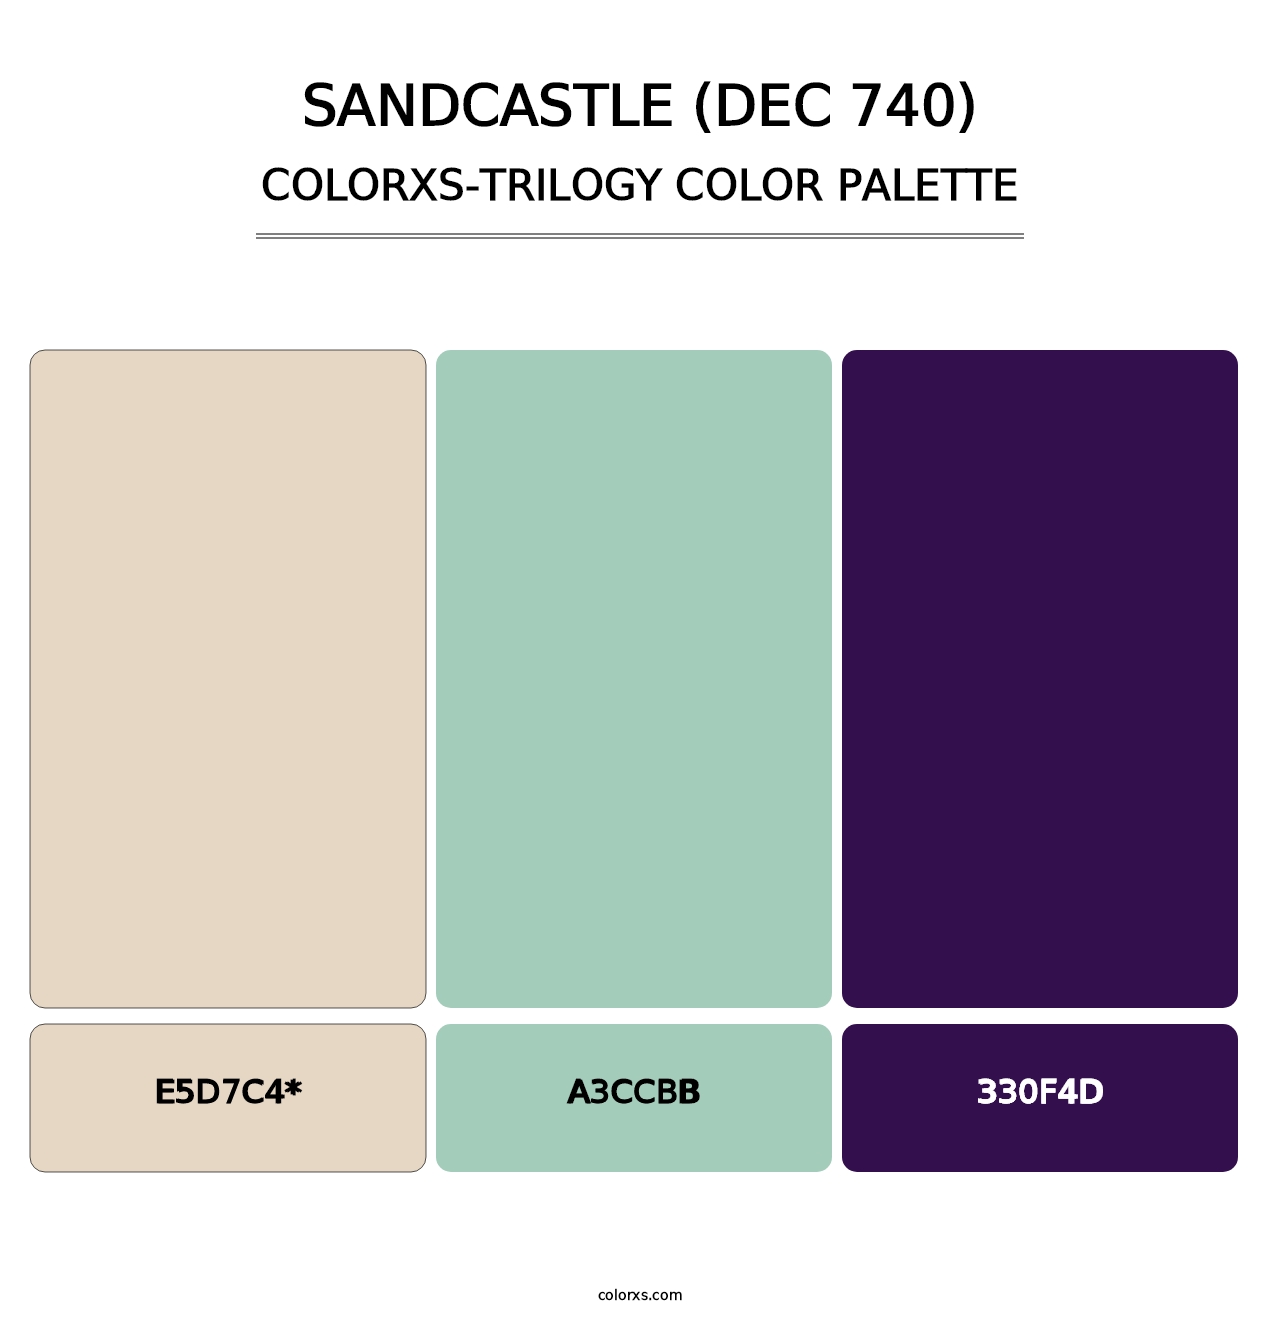 Sandcastle (DEC 740) - Colorxs Trilogy Palette